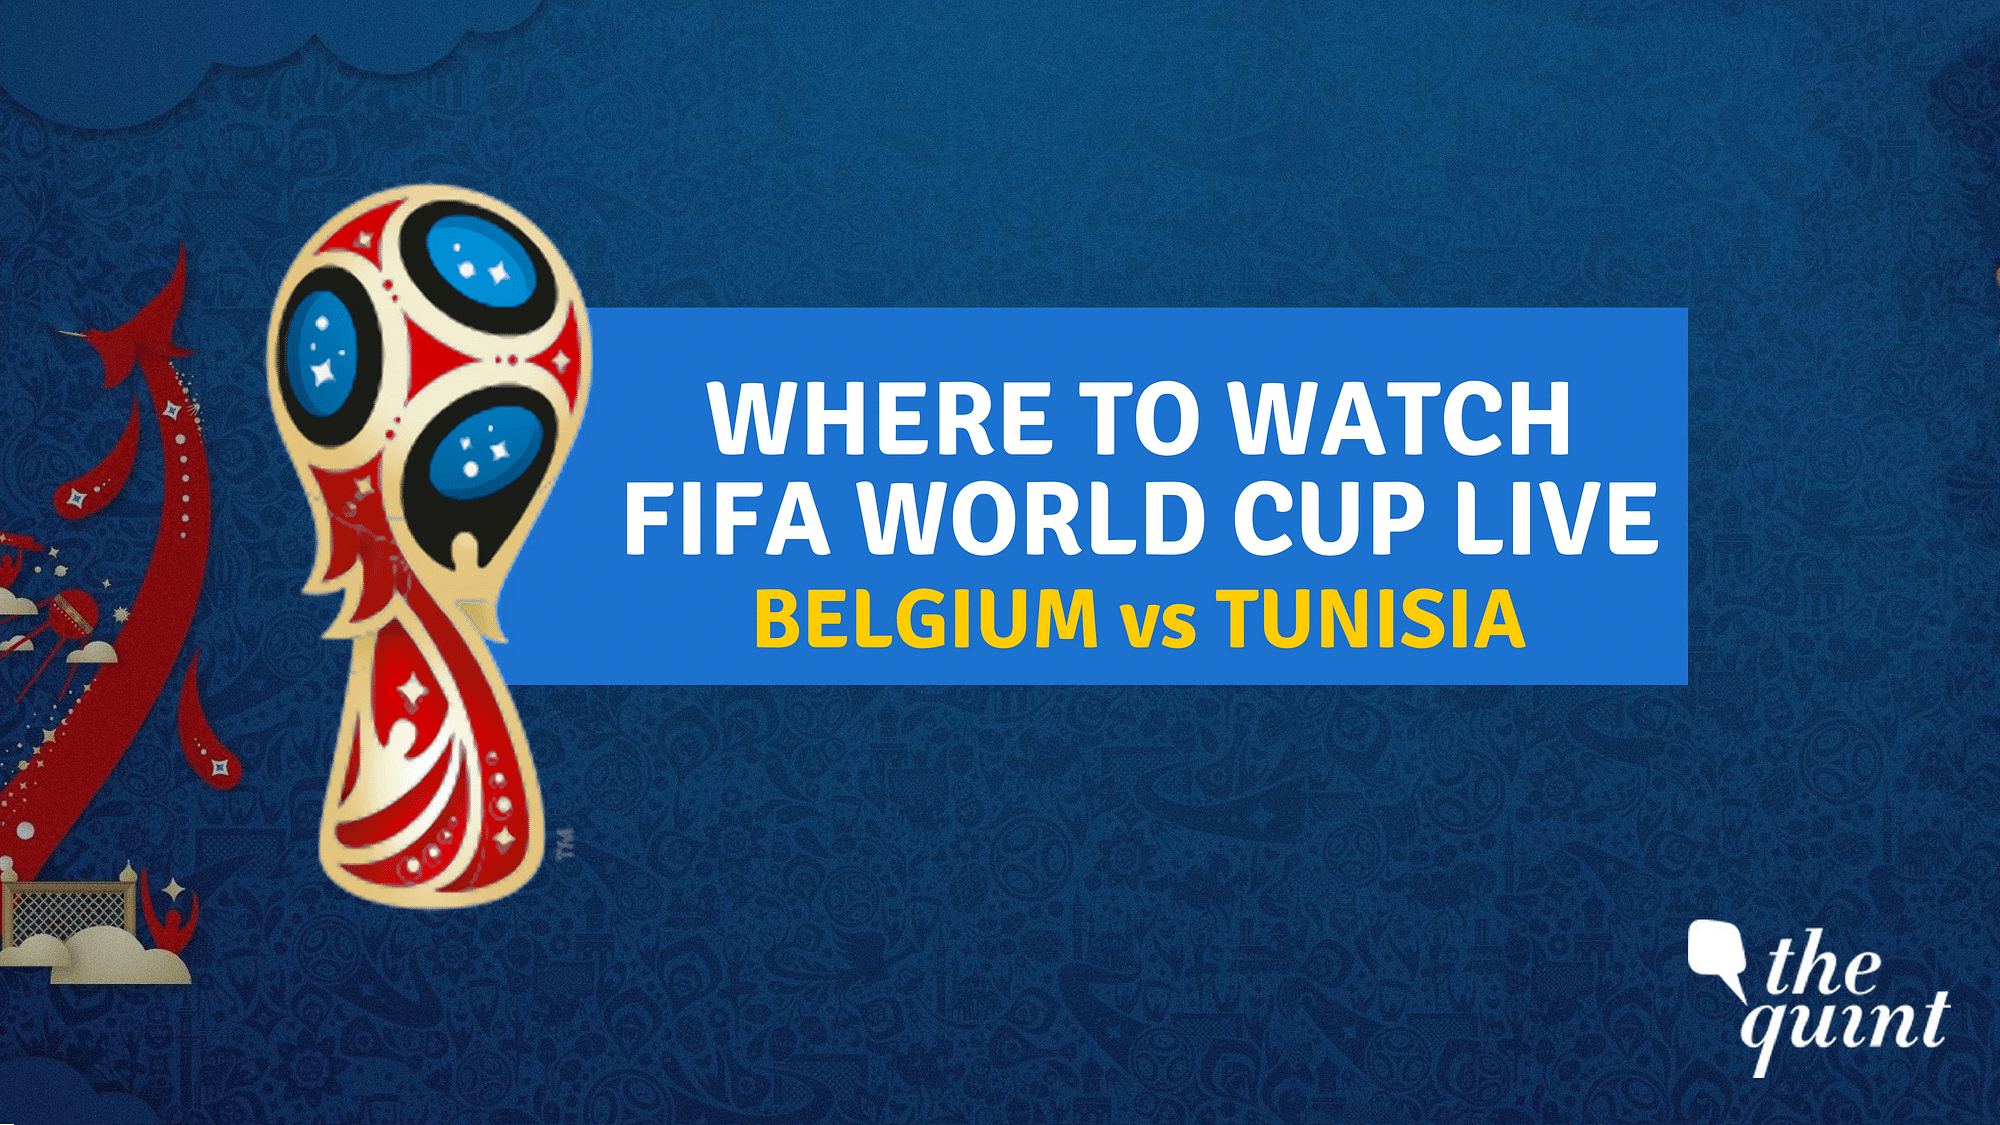 Belgium vs Tunisia Live Score FIFA World Cup 2018 Live Streaming